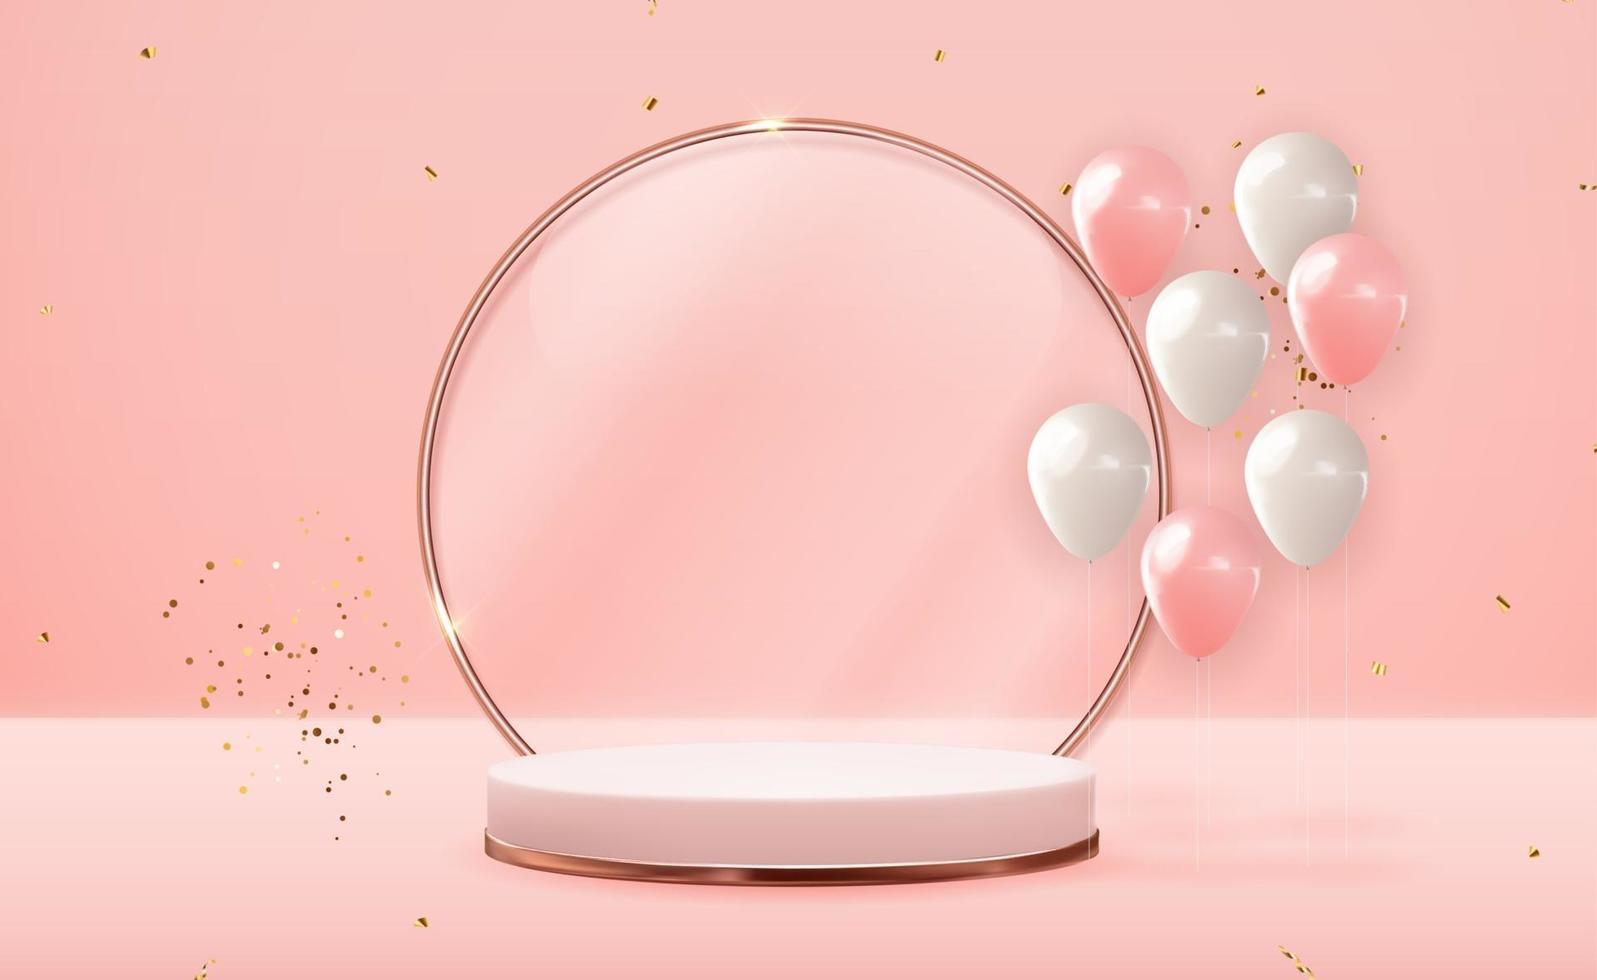 realistisk 3d rosguld piedestal över rosa pastellfärgad naturlig bakgrund med festballonger. trendig tom podiumdisplay för kosmetisk produktpresentation, modetidning. kopia utrymme vektorillustration eps10 vektor